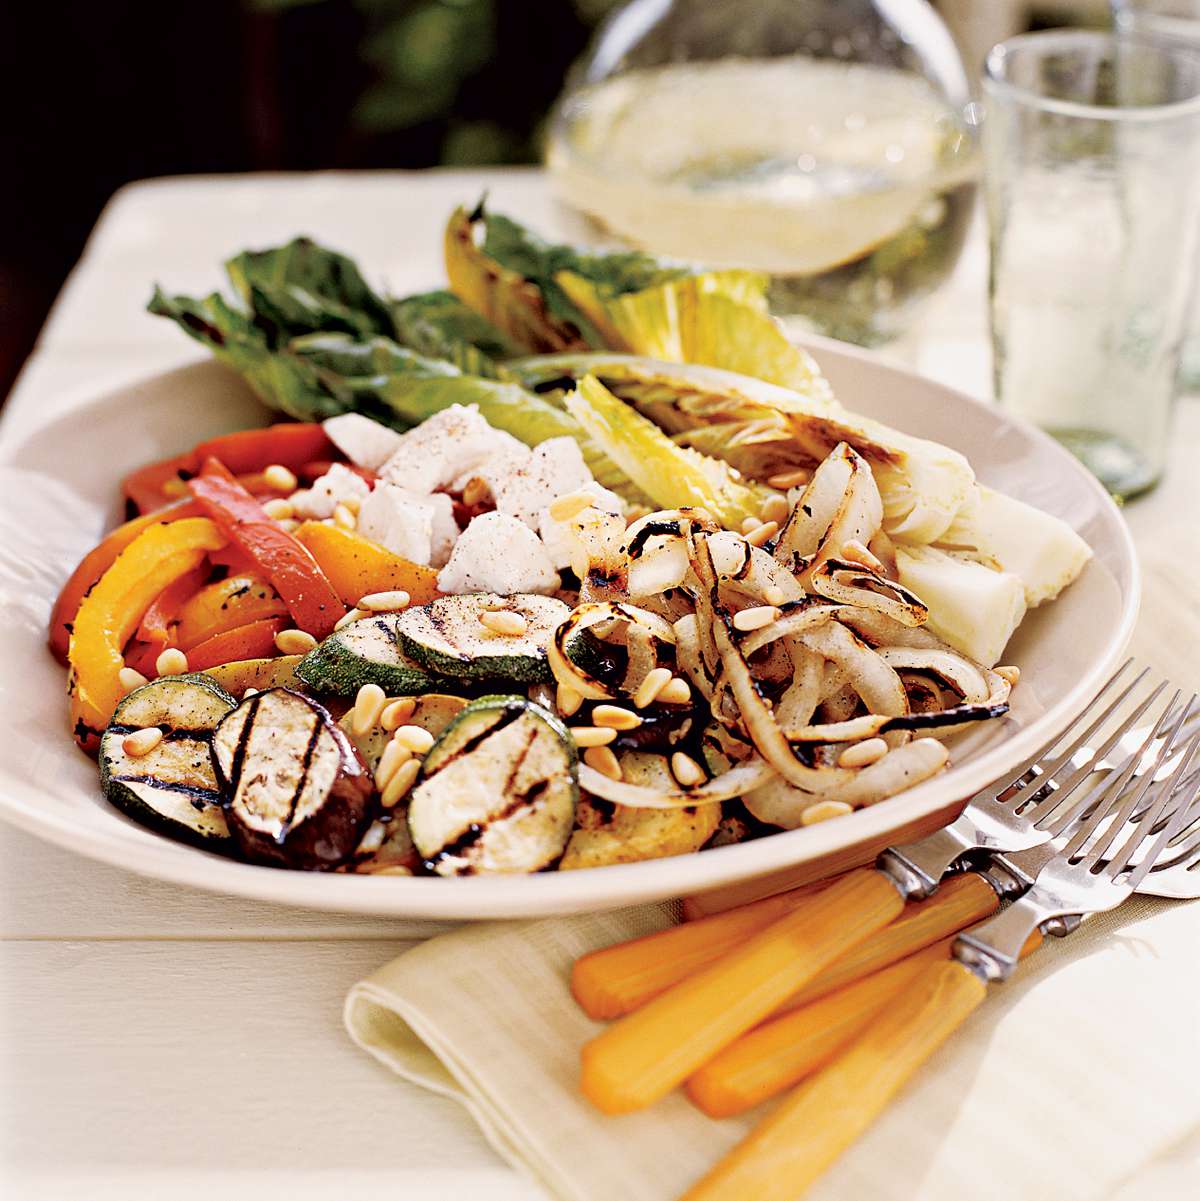 Adler & Fertig's Knife and Fork Grilled Vegetable Salad 